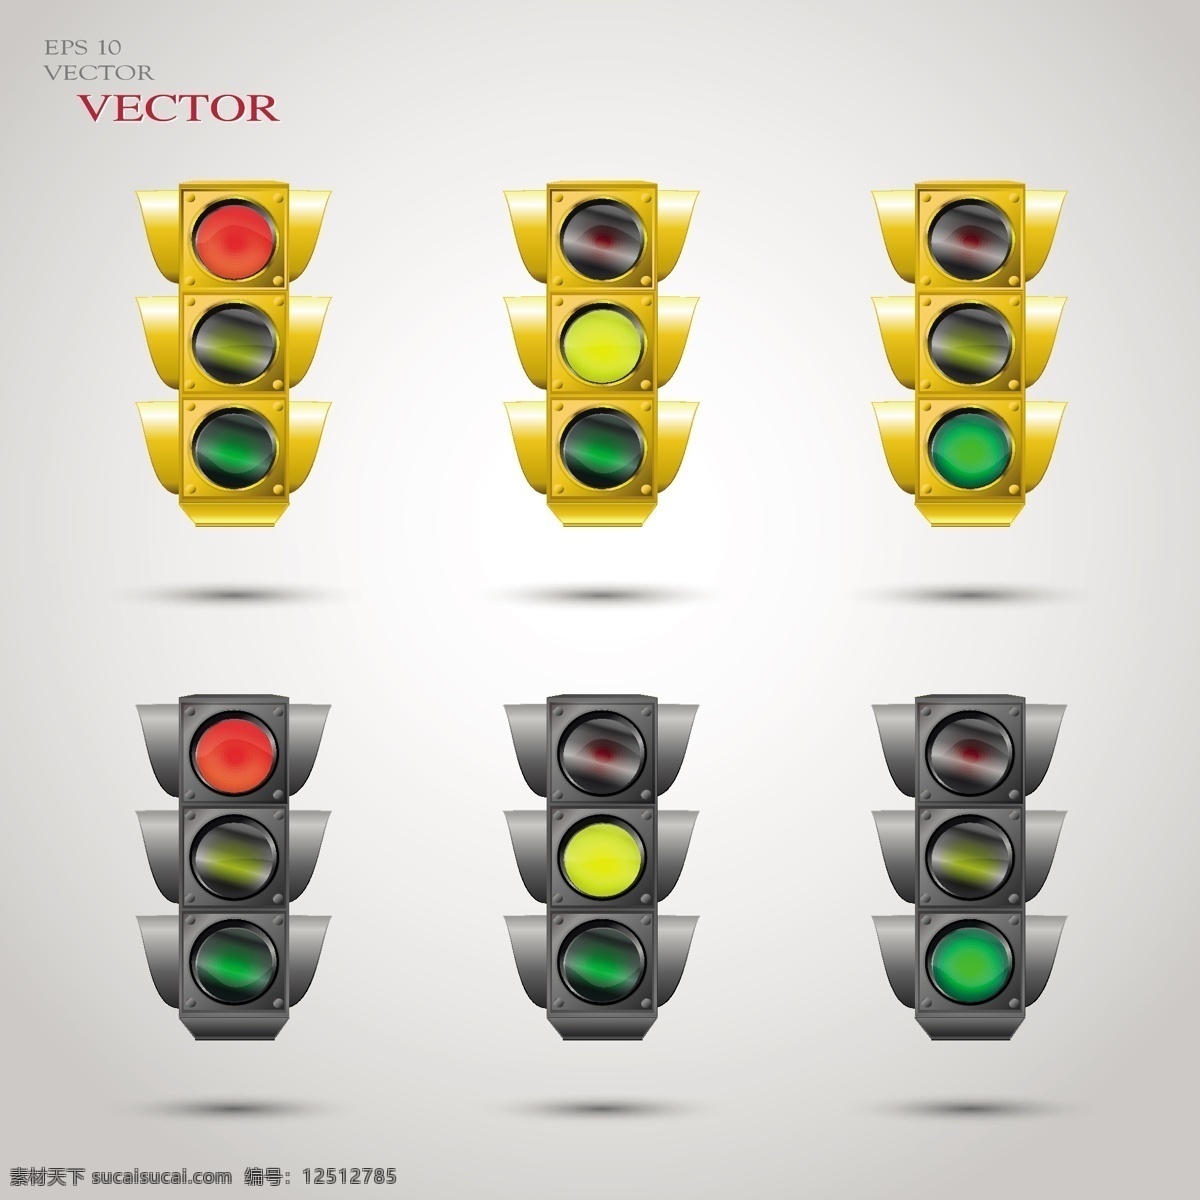 矢量 红绿灯 模板下载 红灯 绿灯 黄灯 马路灯 交通灯 生活百科 矢量素材 白色